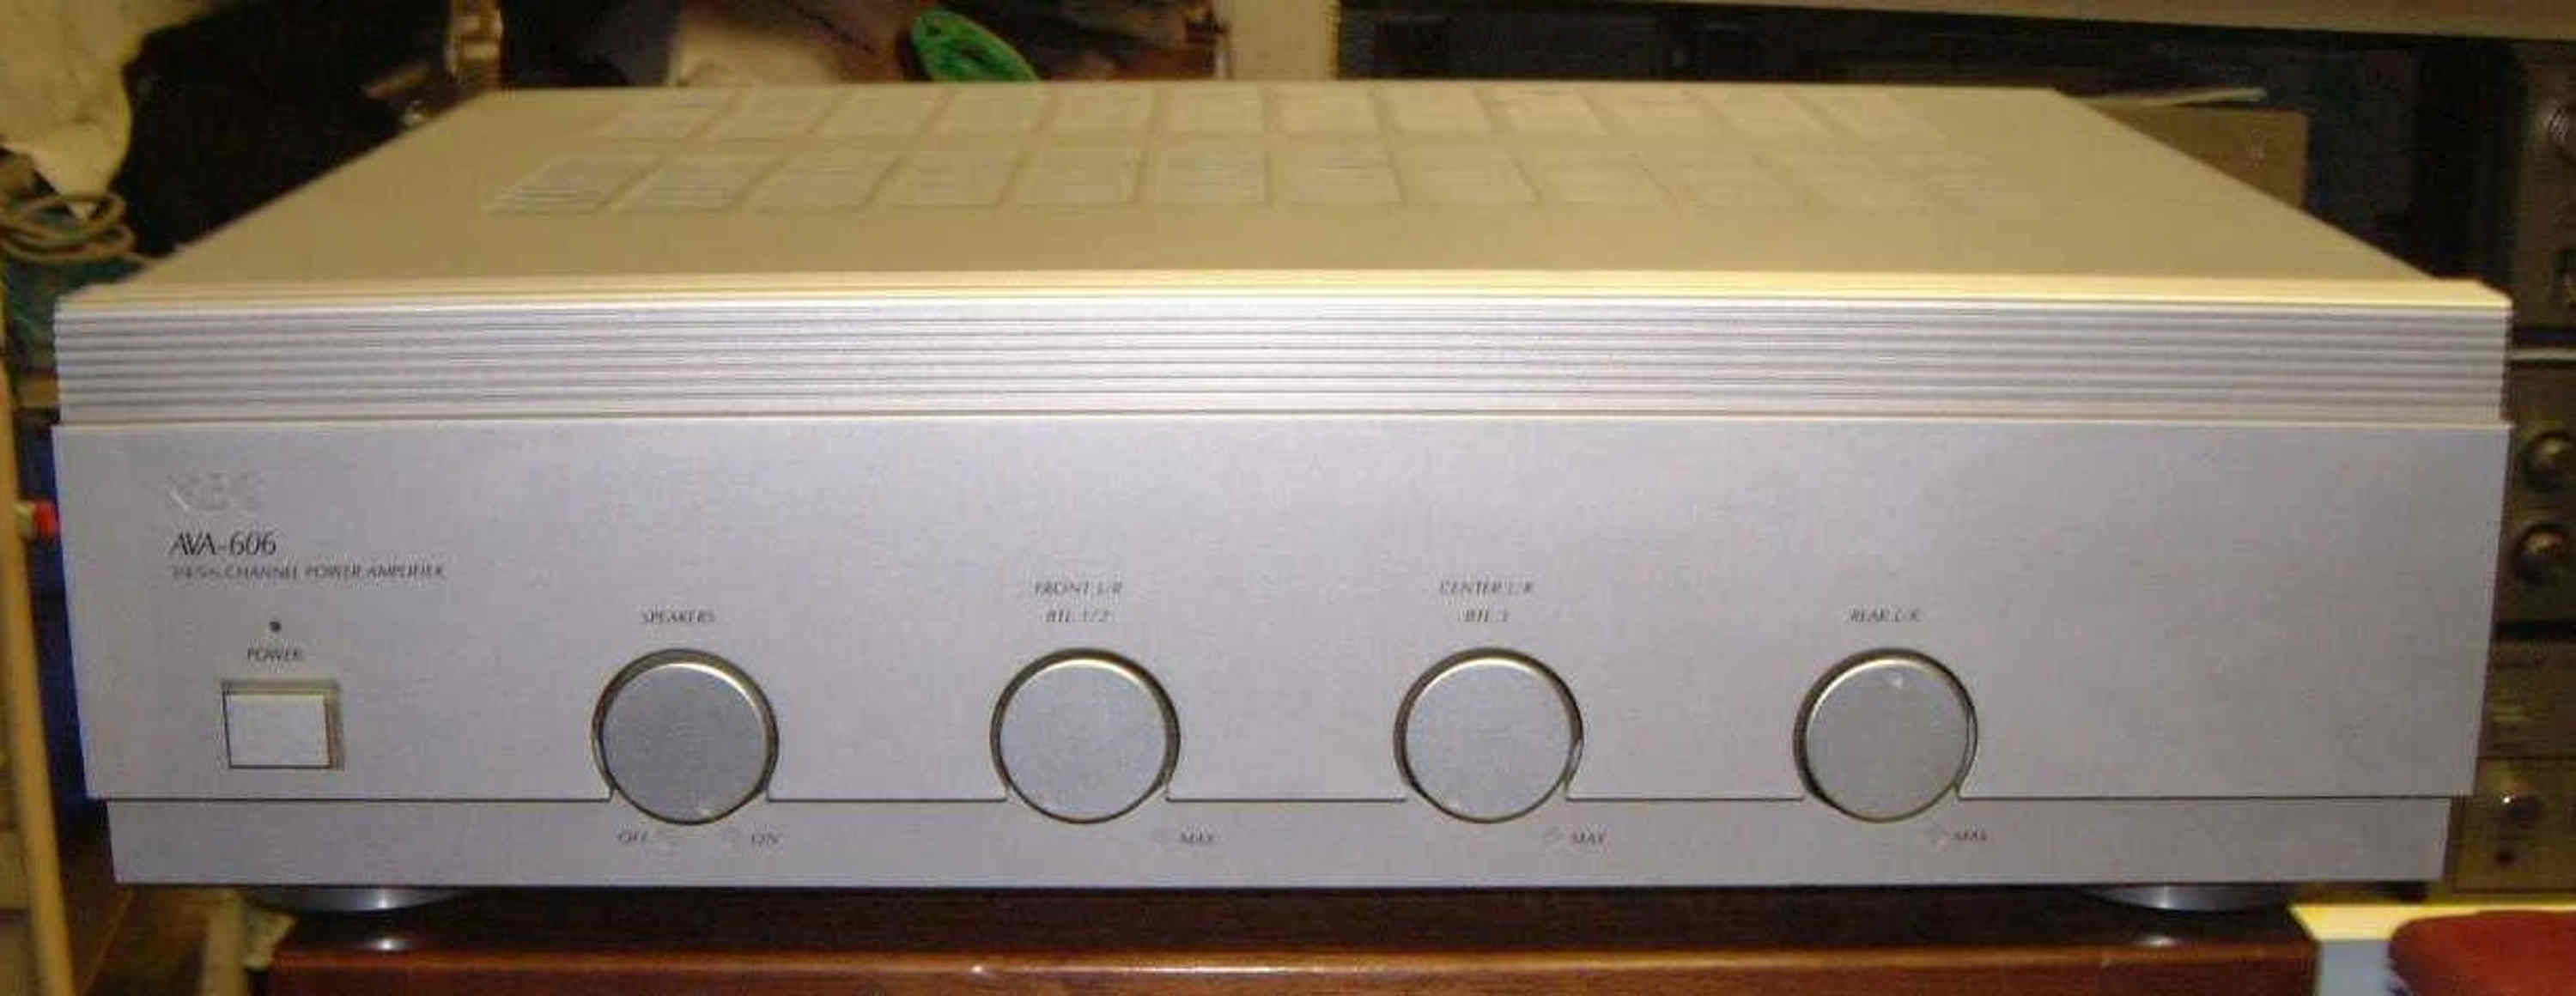 vintage hi-fi power amplifier Nec AVA-606